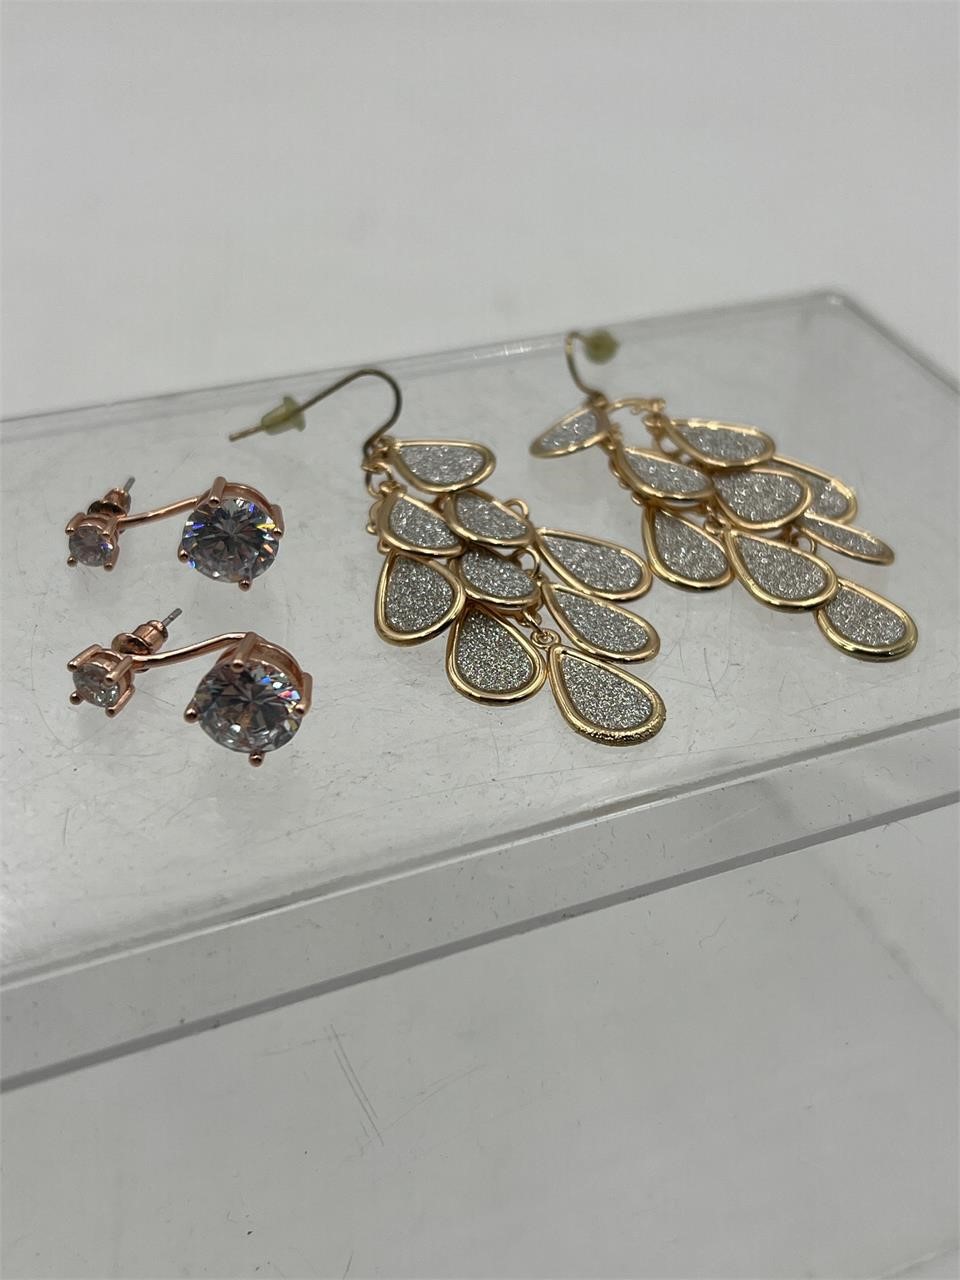 Costume jewelry earrings